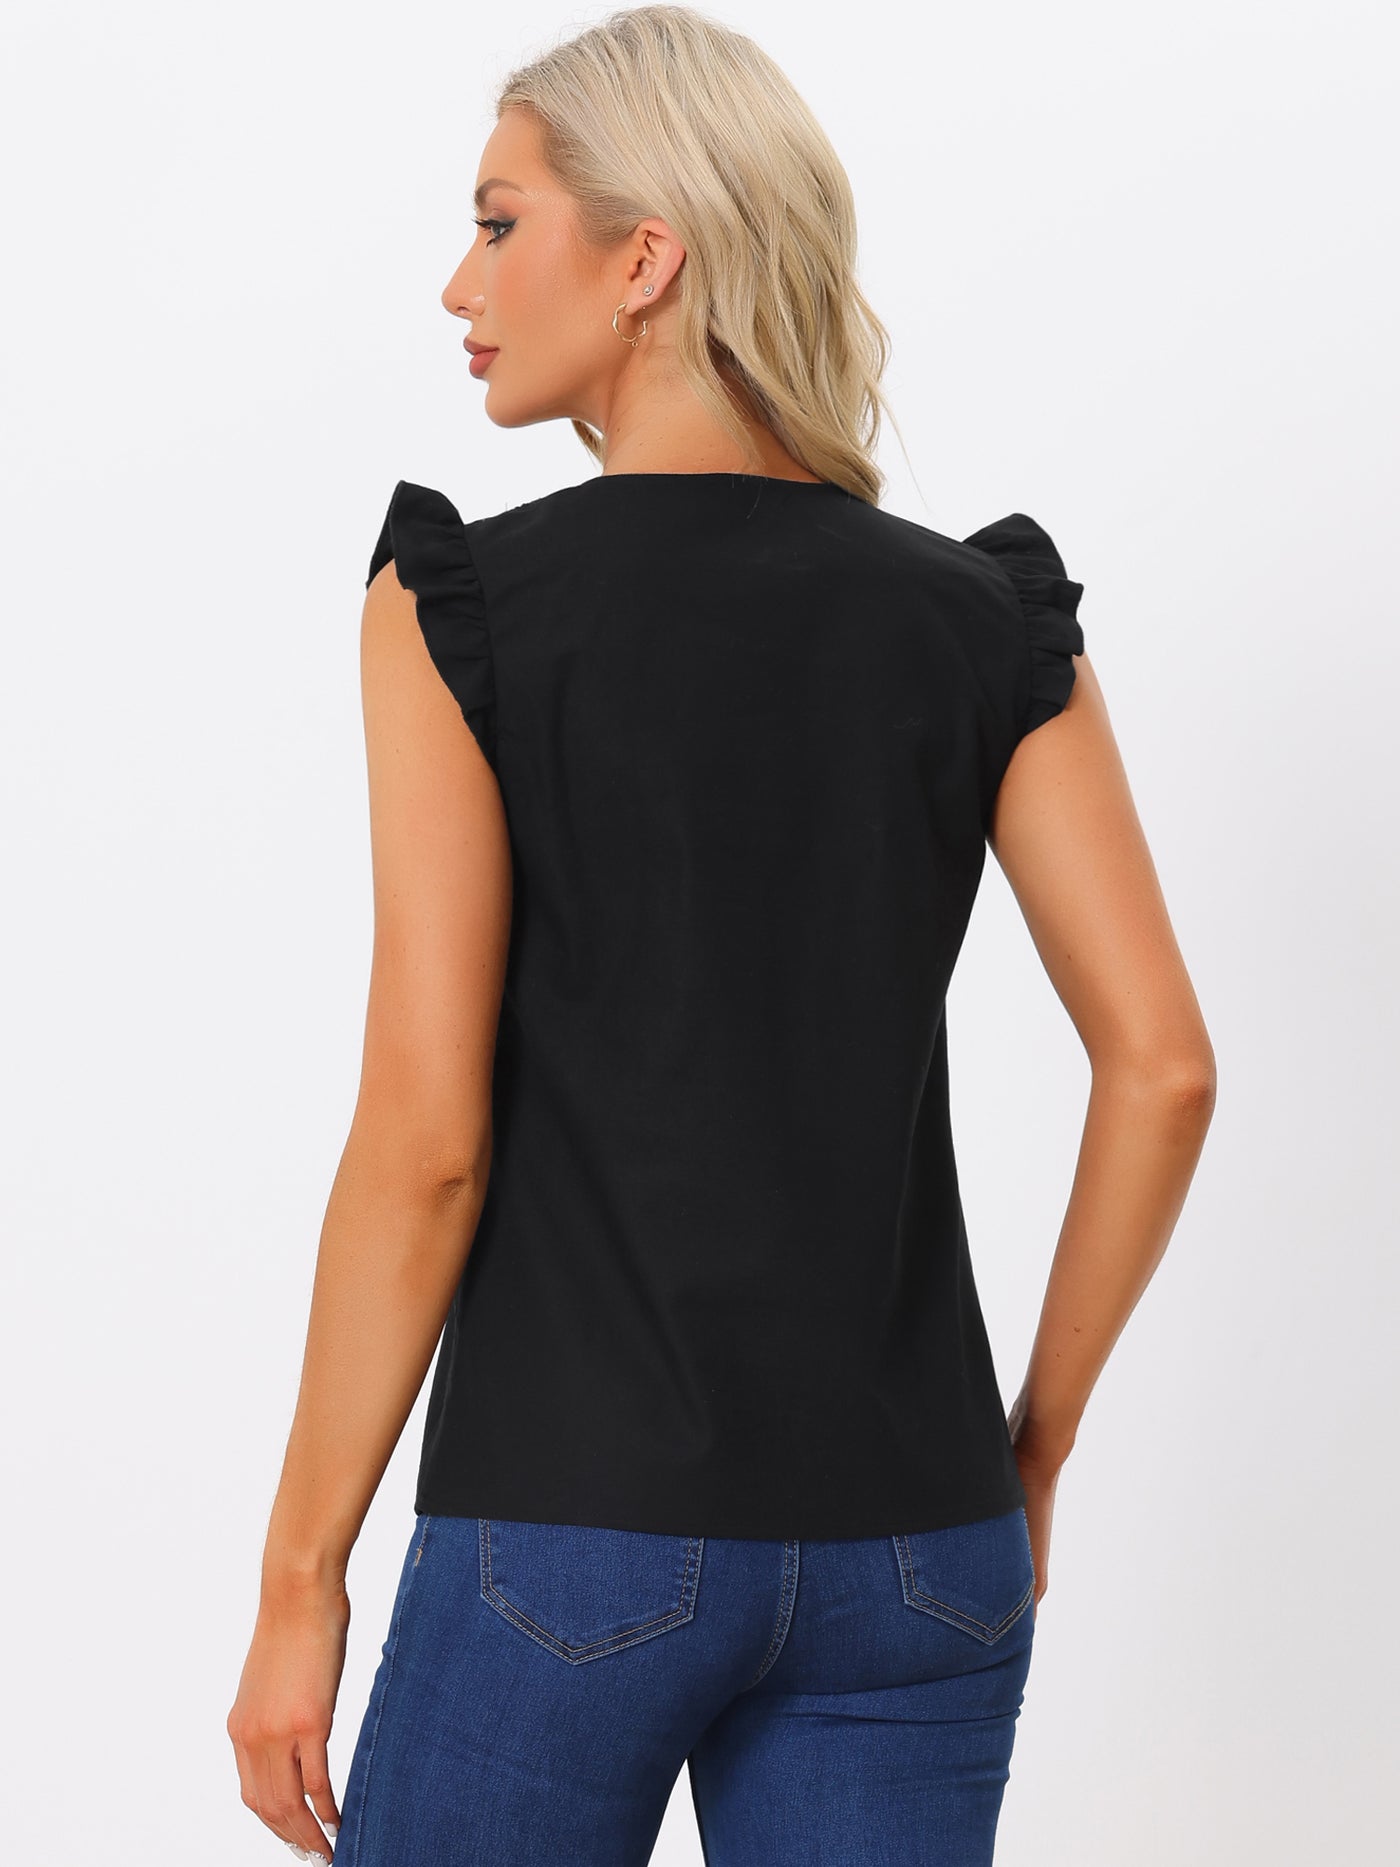 Allegra K Tank Tops for Women's 2024 Elegant V Neck Ruffle Shirts Sleeveless Top